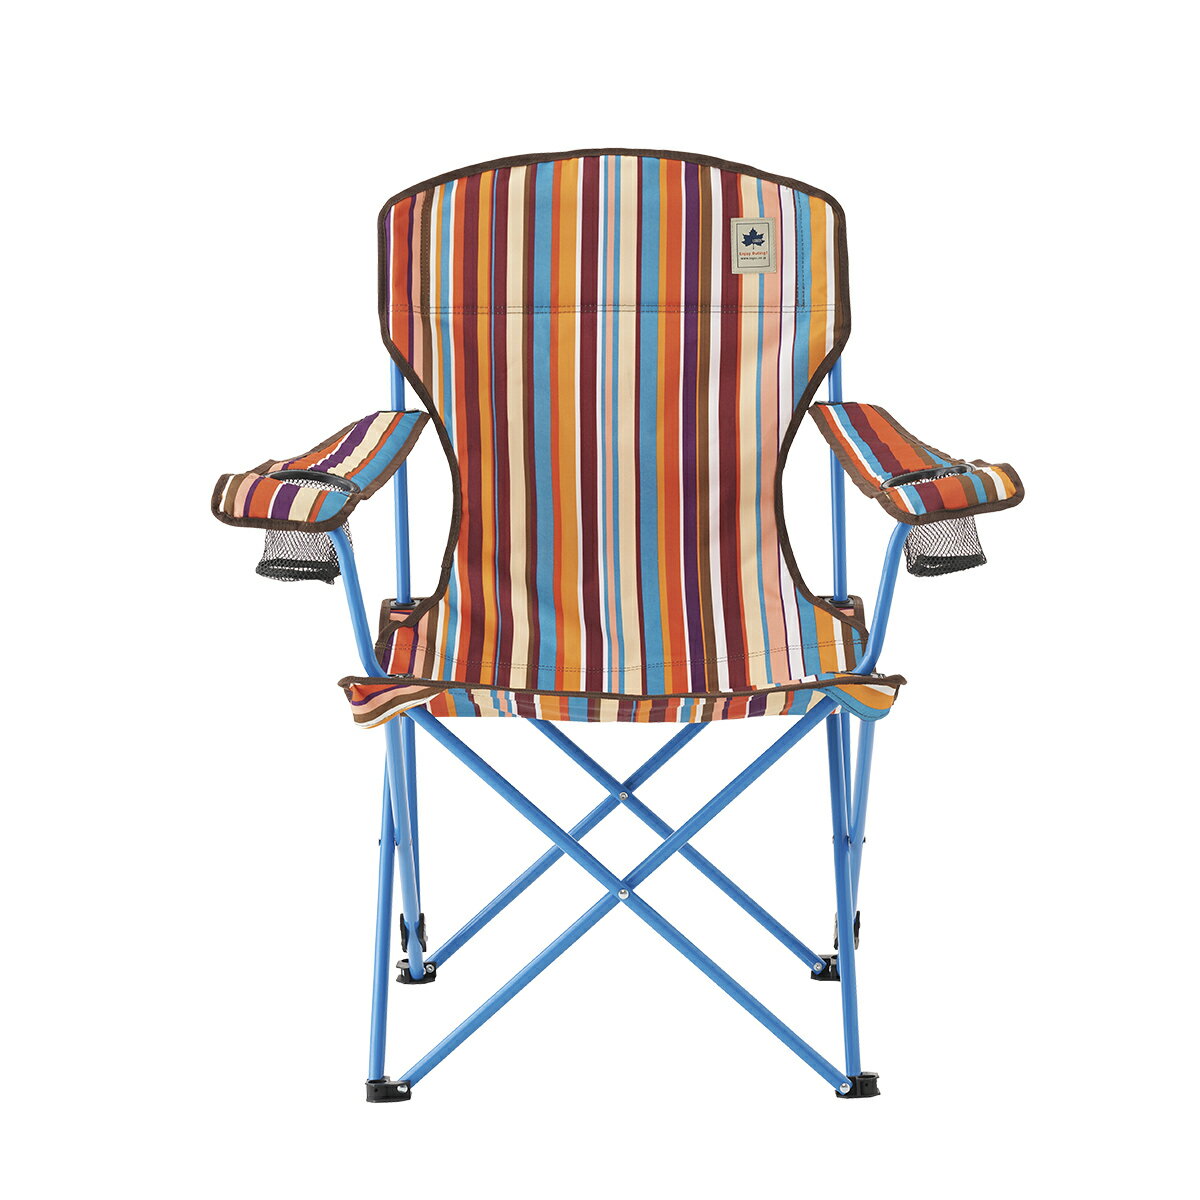 【あす楽】LOGOS/ロゴス リクライナーチェア(オレンジストライプ) 背もたれ2段階焼成可能なリクライニングチェア 椅子 アームレストにドリンクホルダー2個付き 収束型チェア 椅子